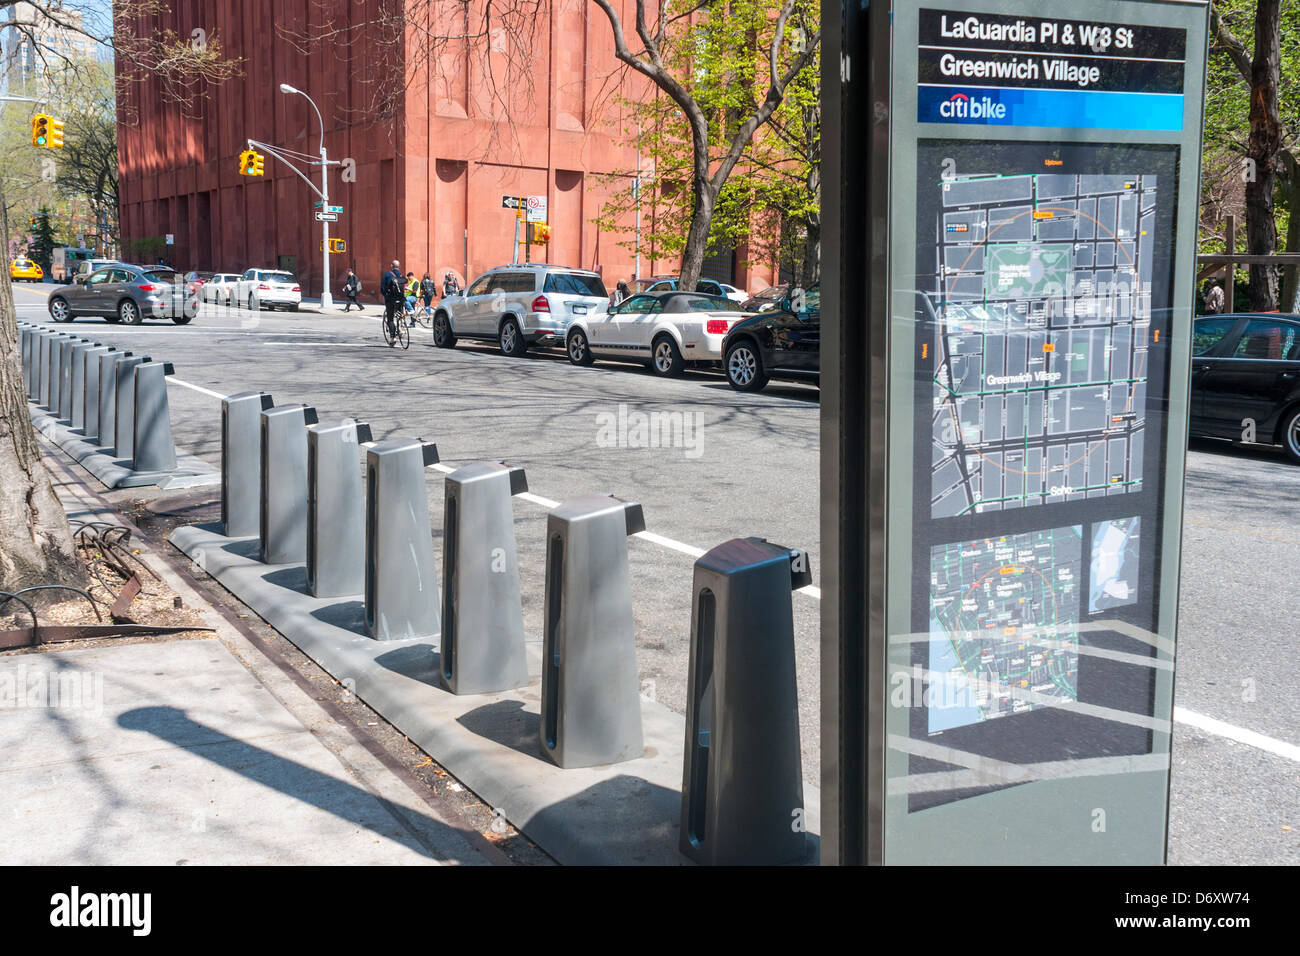 New York, NY - BikeShare nouvellement installé sur la station Place près de LaGuardia de New York et Washington Square Park Banque D'Images